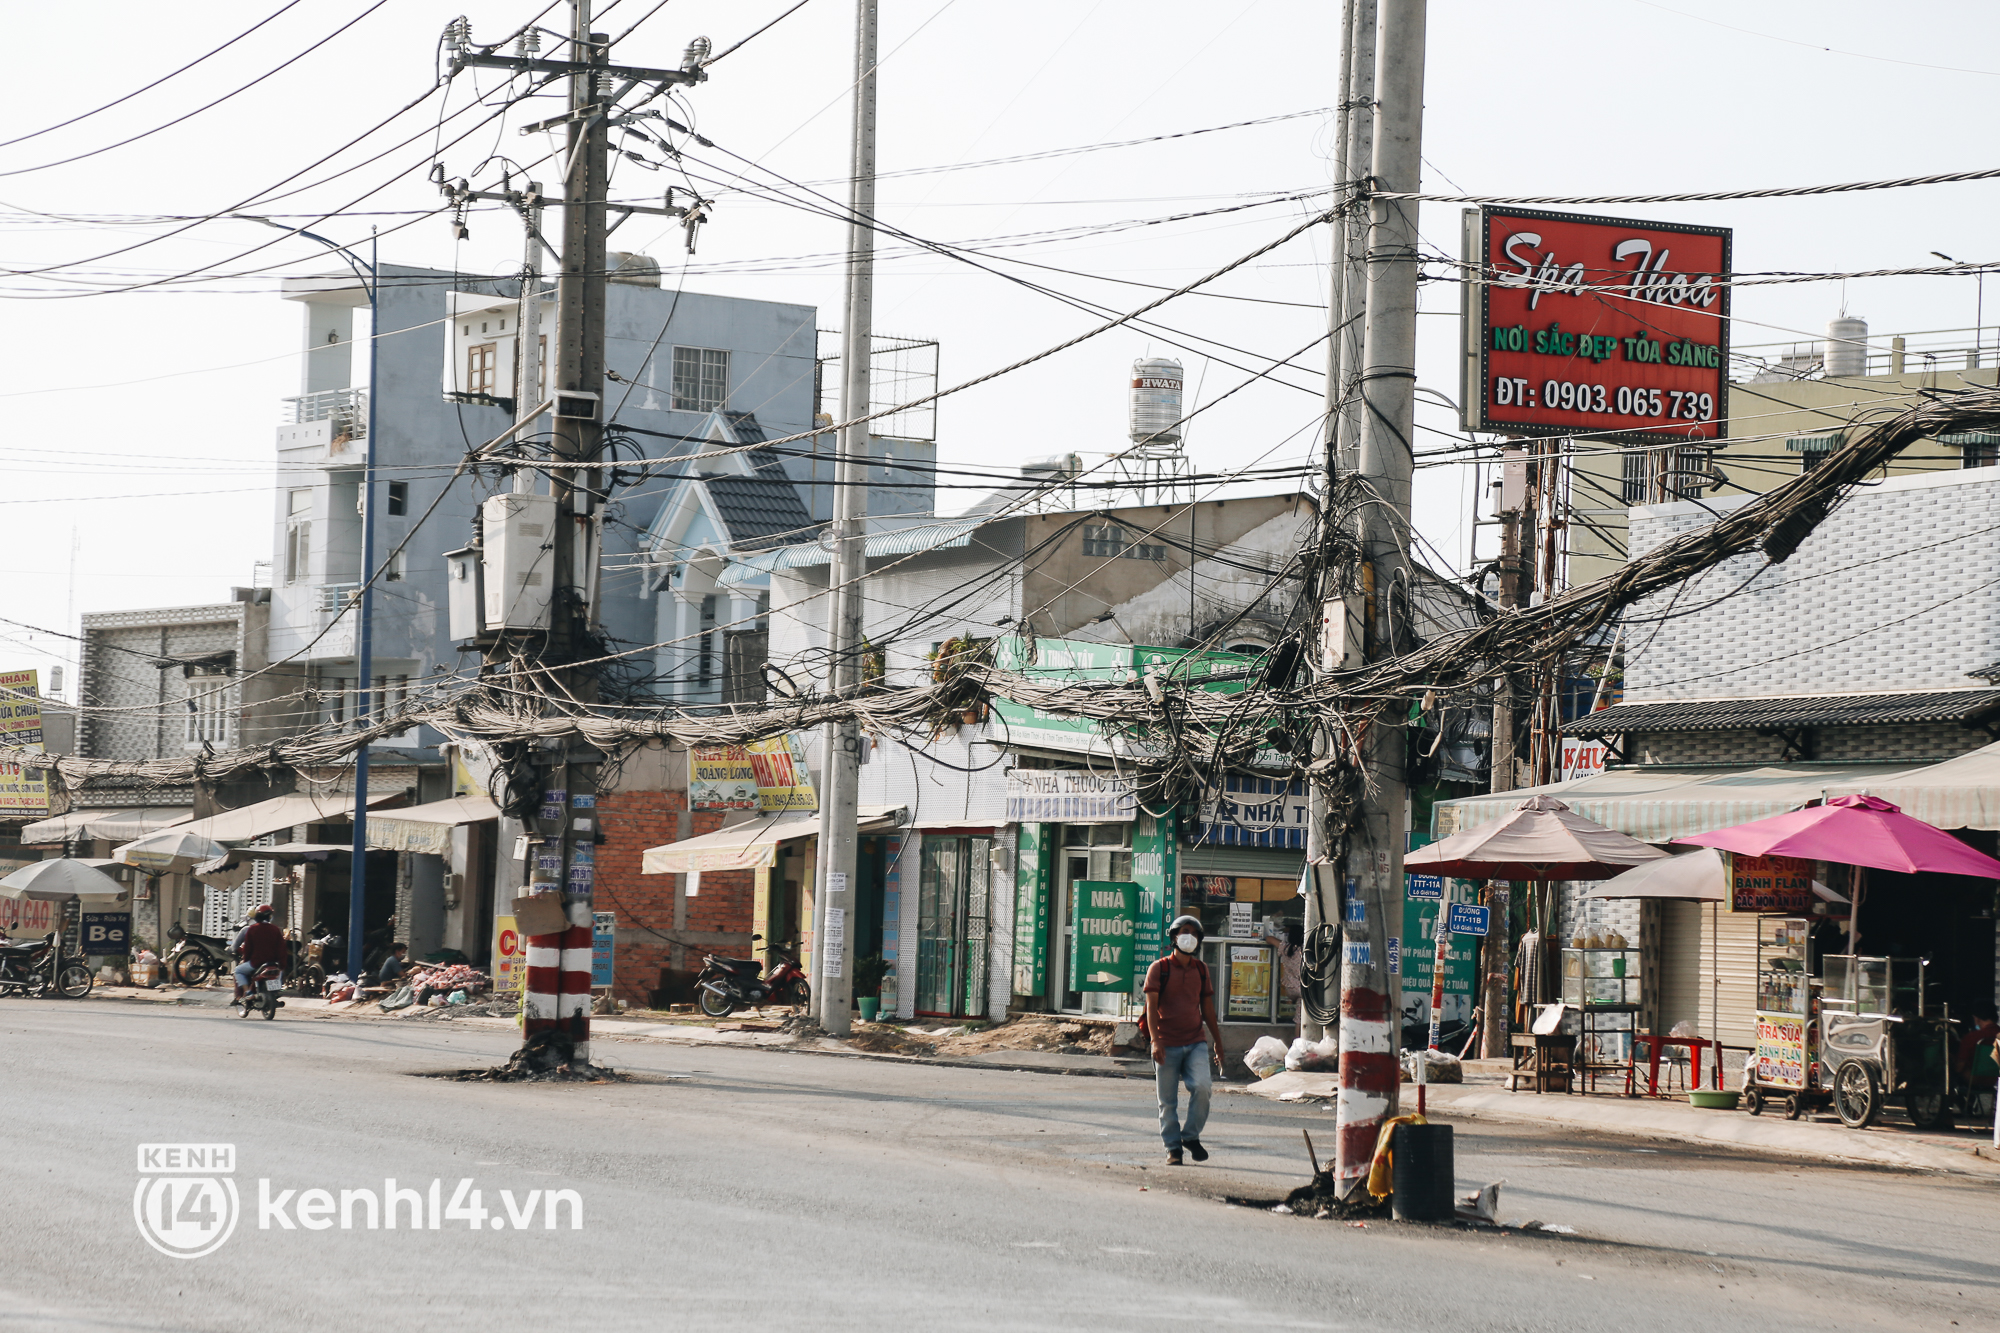 Hàng trăm cột điện bị bỏ quên giữa đường ở Sài Gòn, người dân nín thở luồn lách - Ảnh 7.